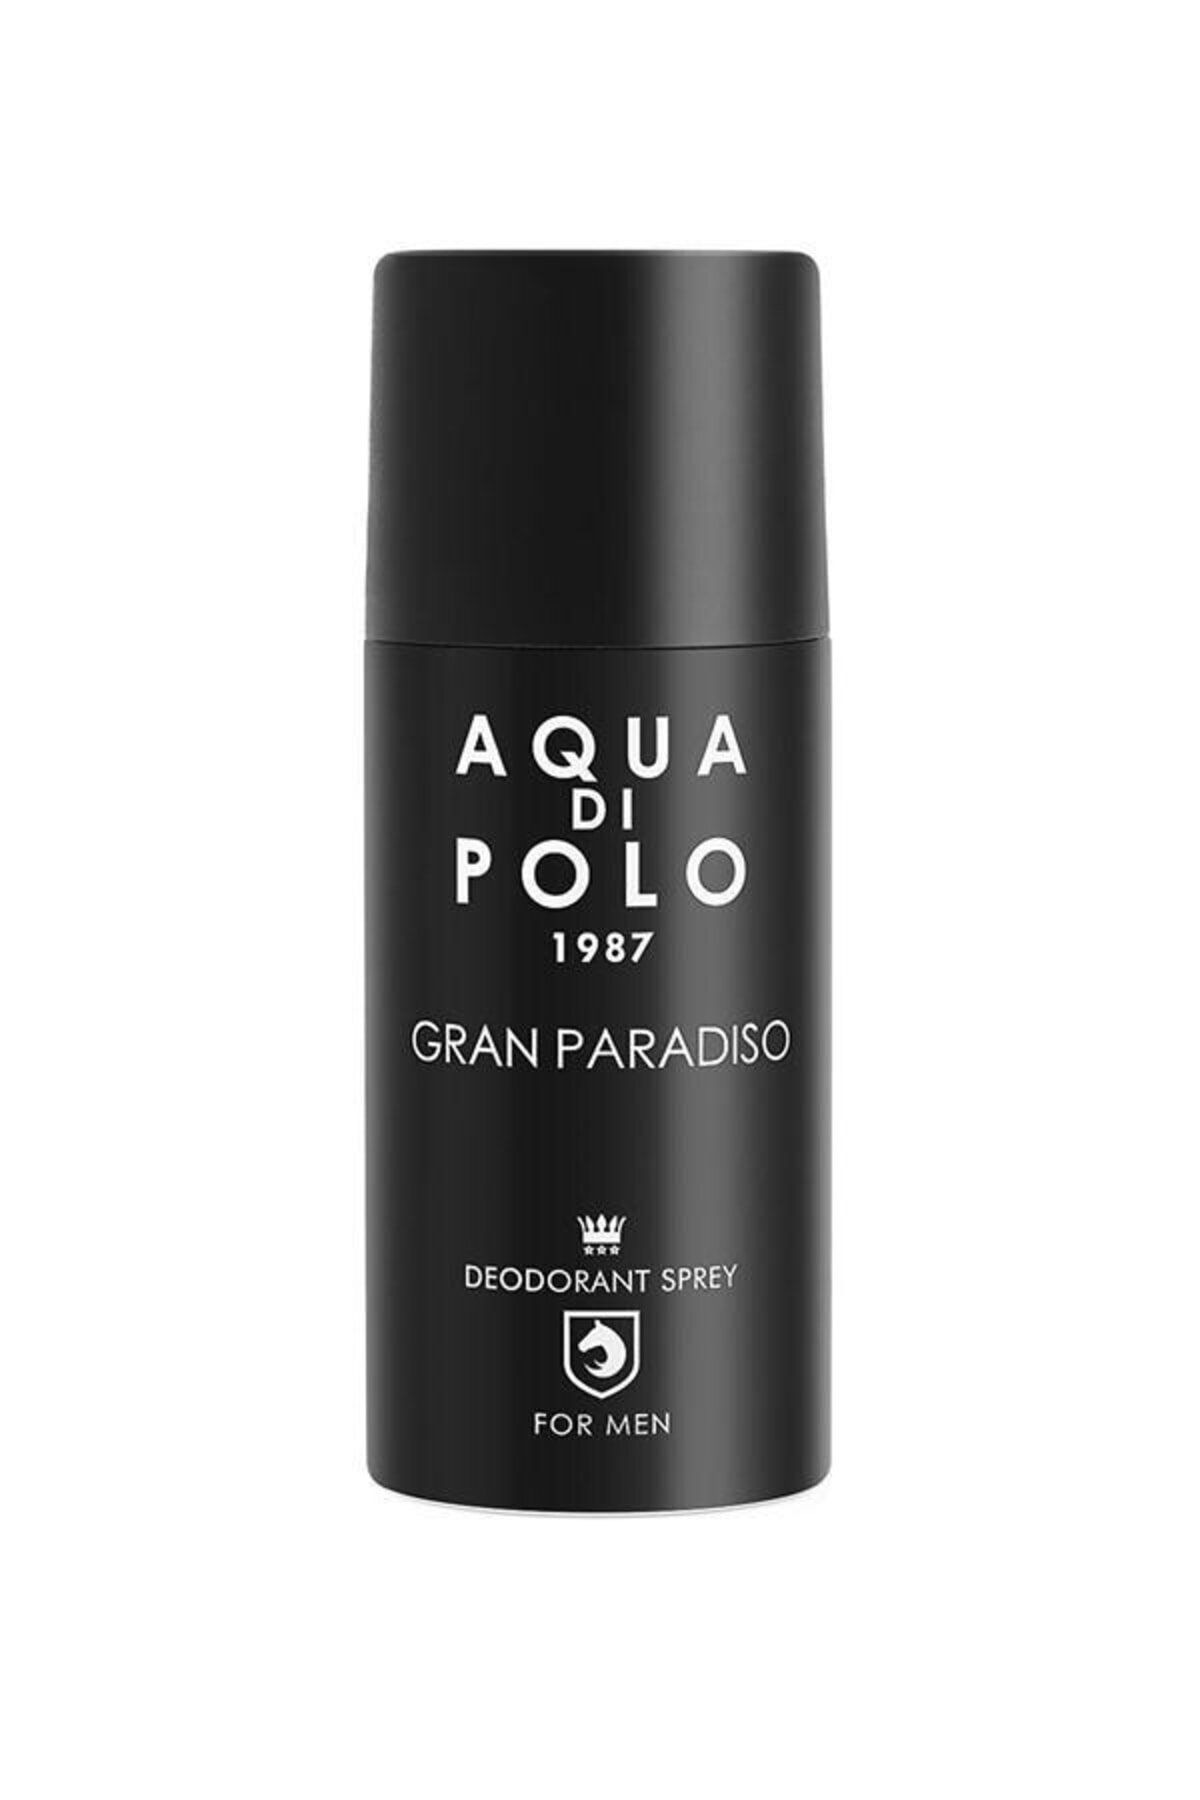 Aqua Di Polo 1987 Gran Paradiso Deodorant 150 Ml Erkek Appdgr03ed